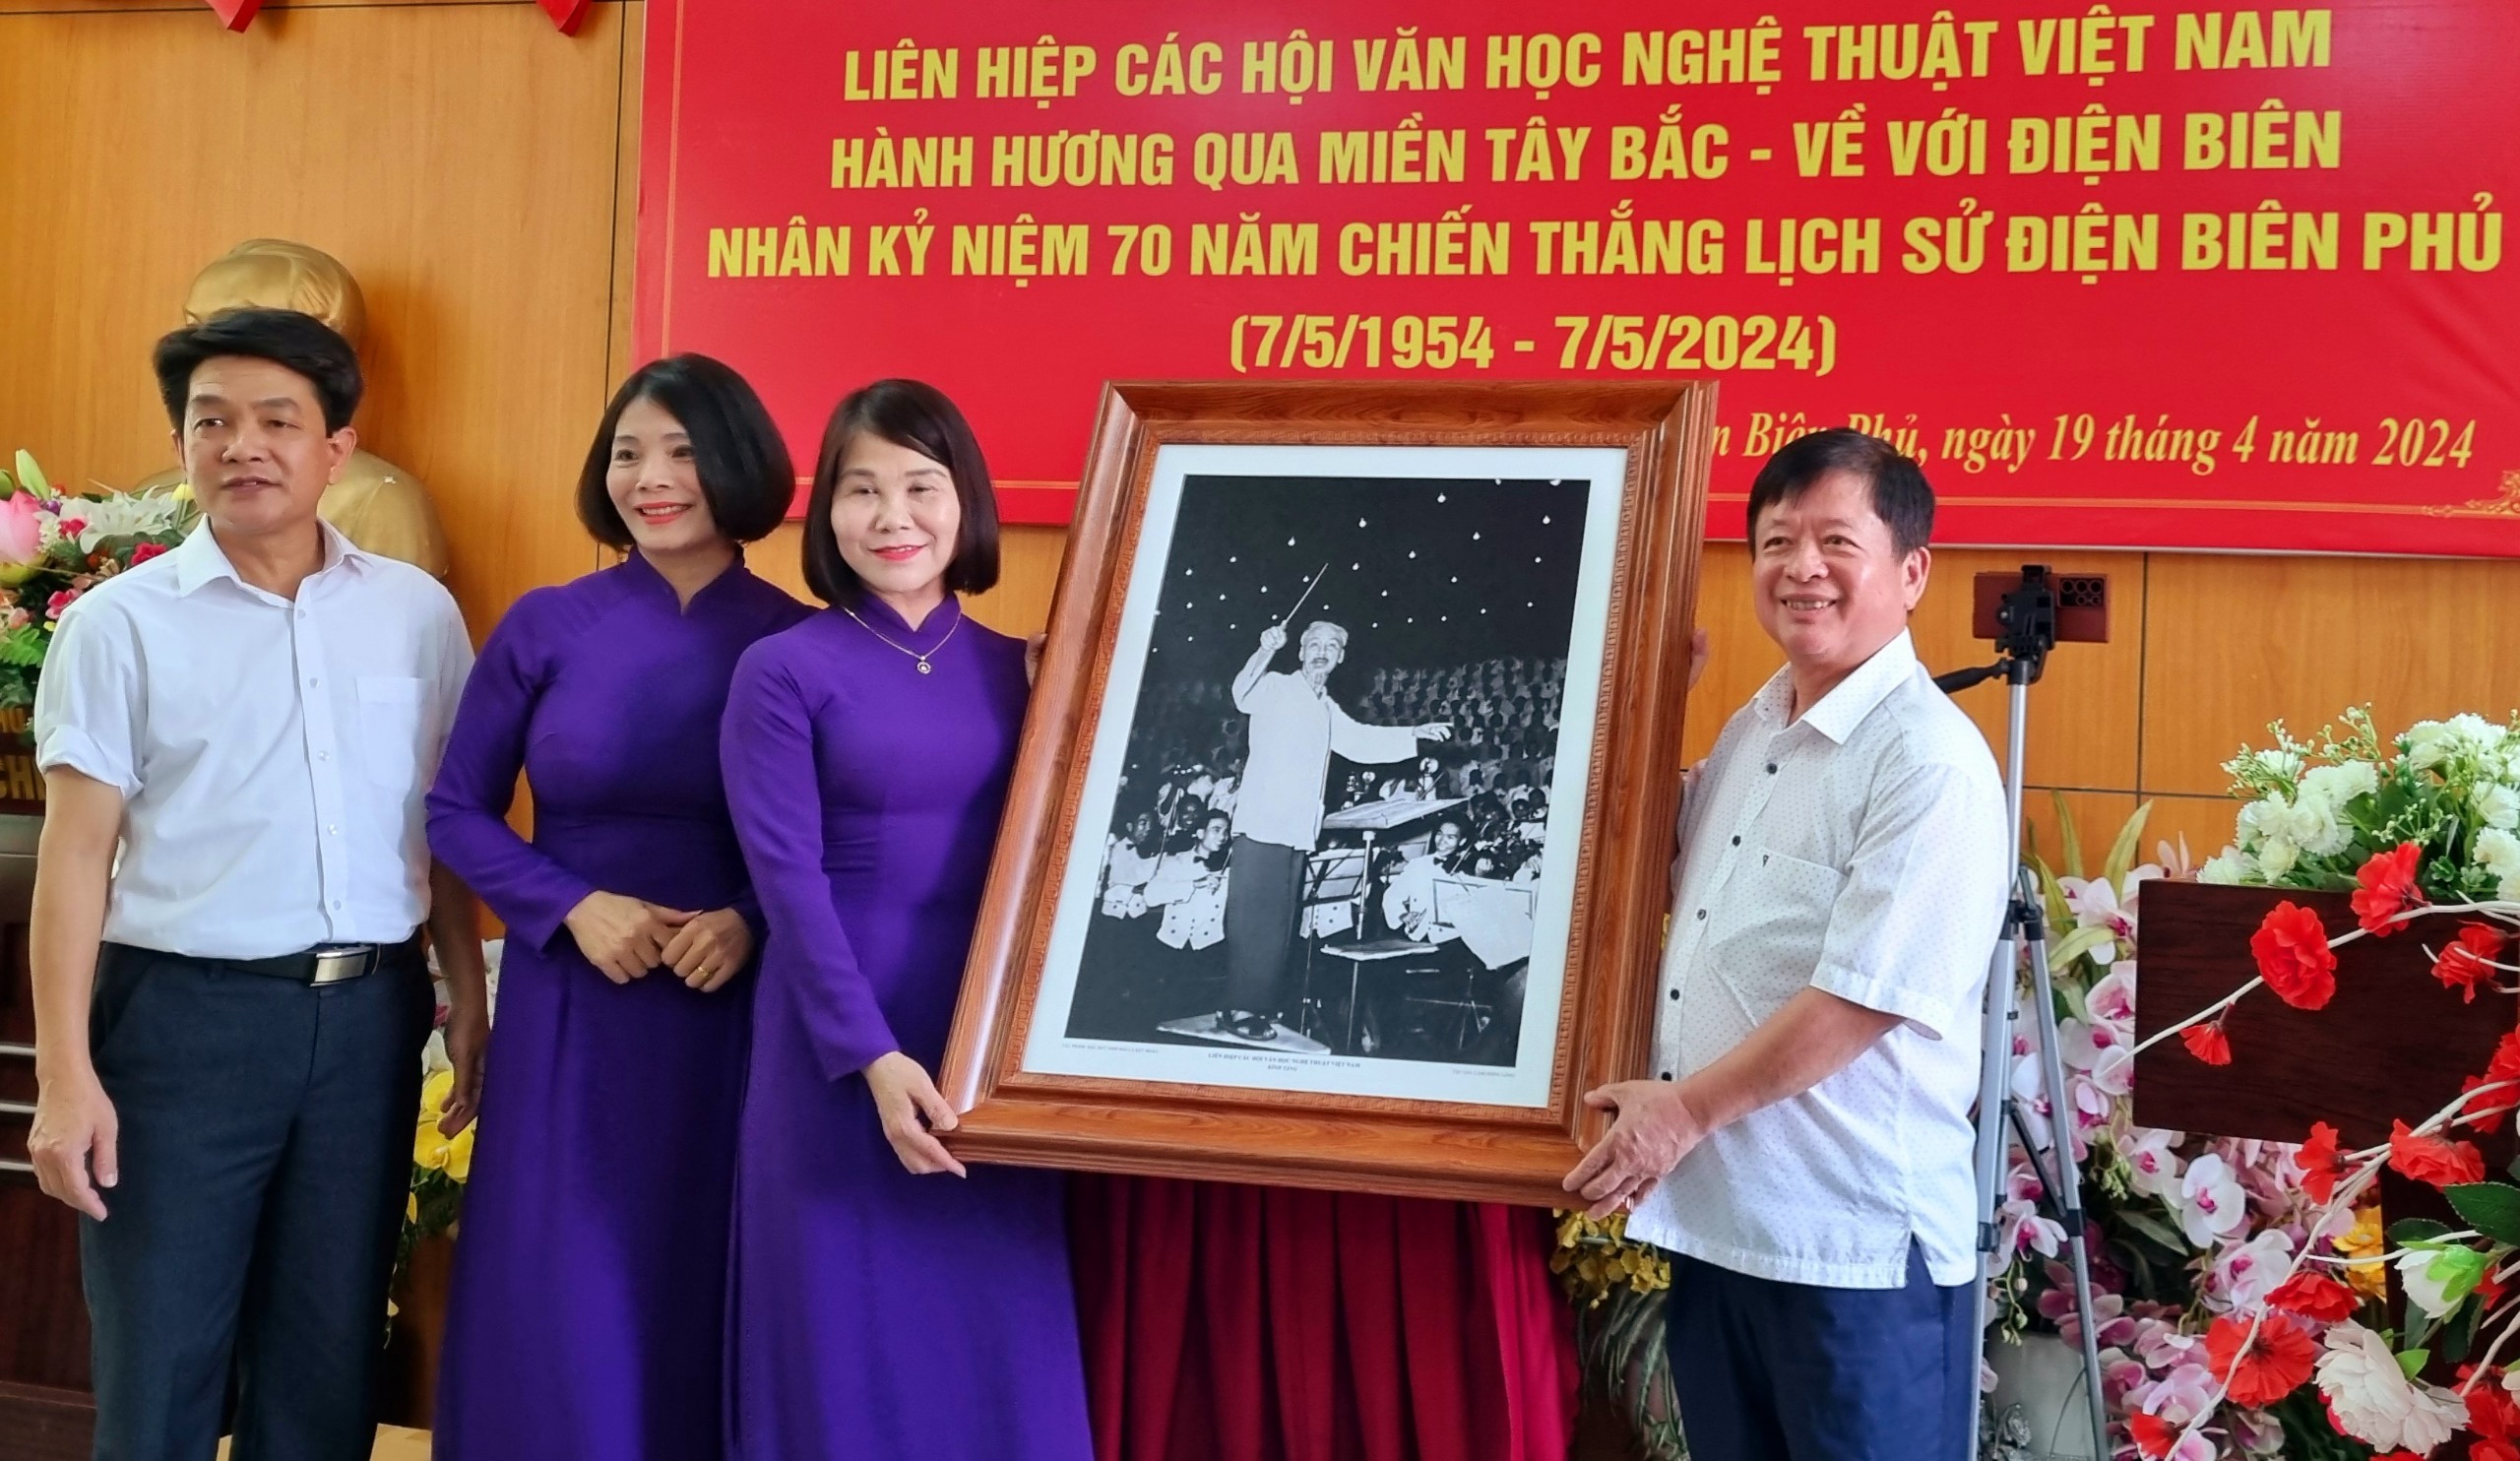 (Ảnh) “Qua miền Tây Bắc - về với Điện Biên”: Thăm và phát động cuộc thi vẽ tranh tại Trường Tiểu học Him Lam - 7